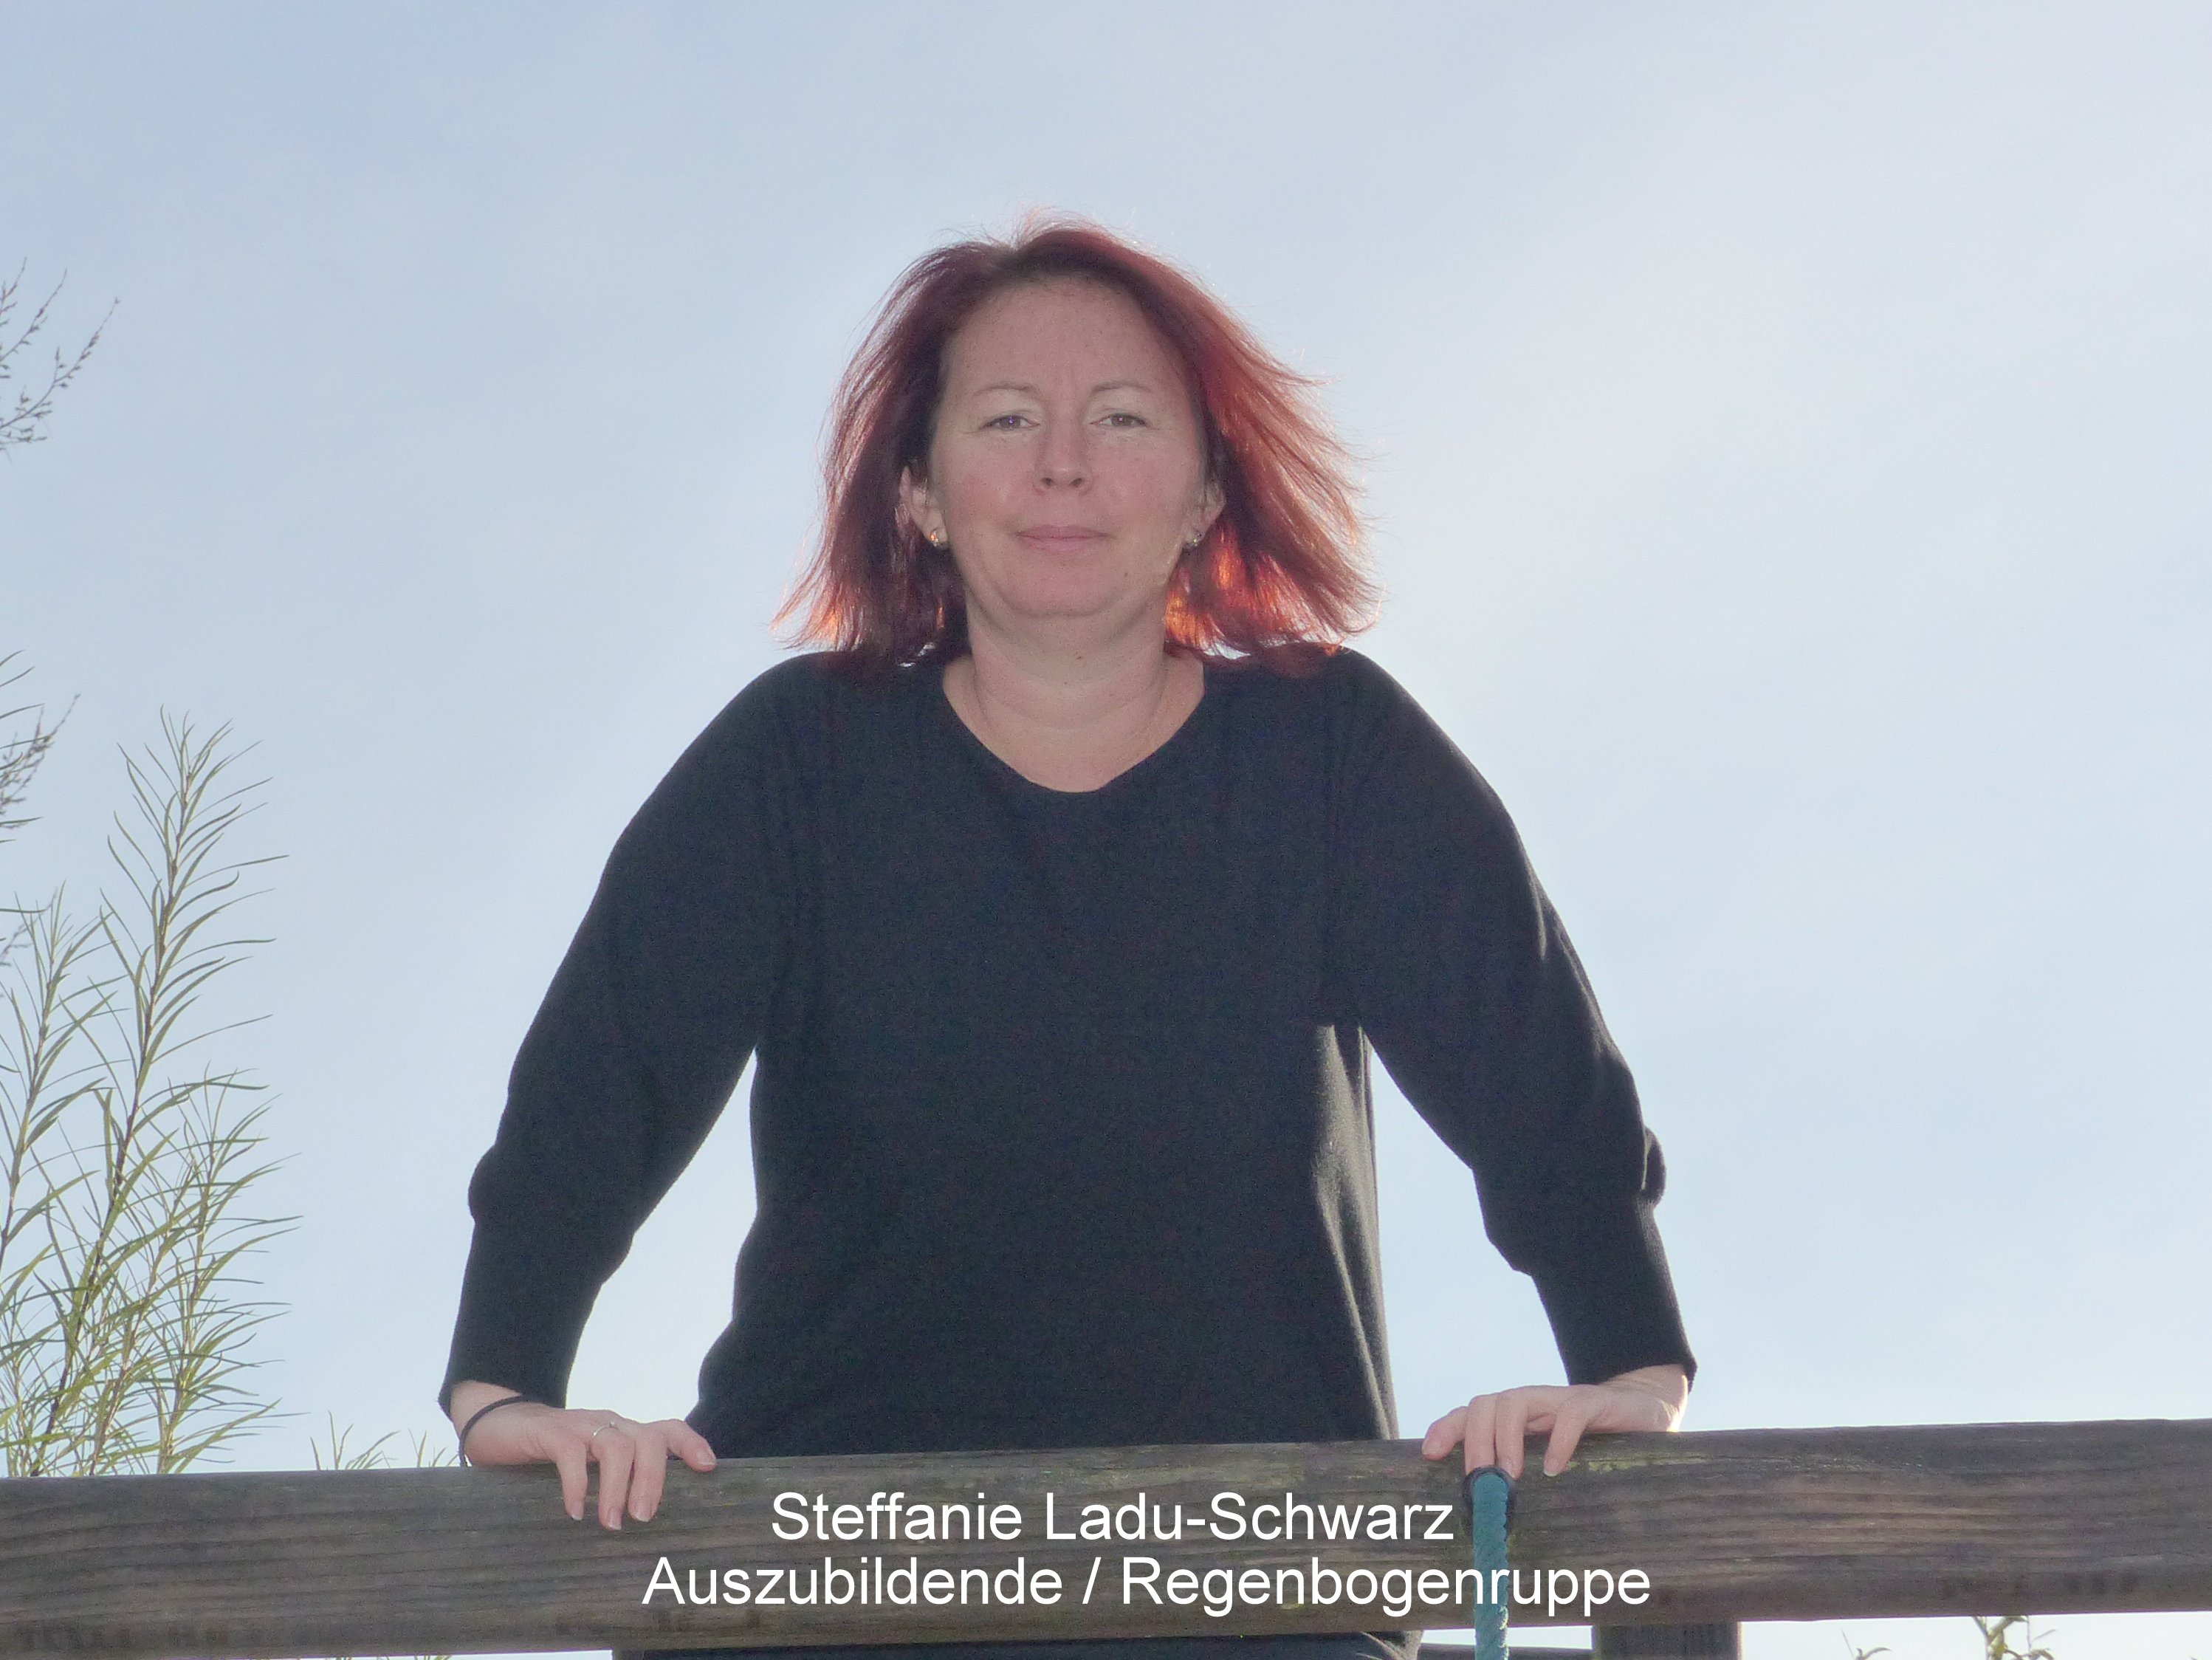 Steffanie Ladu-Schwarz